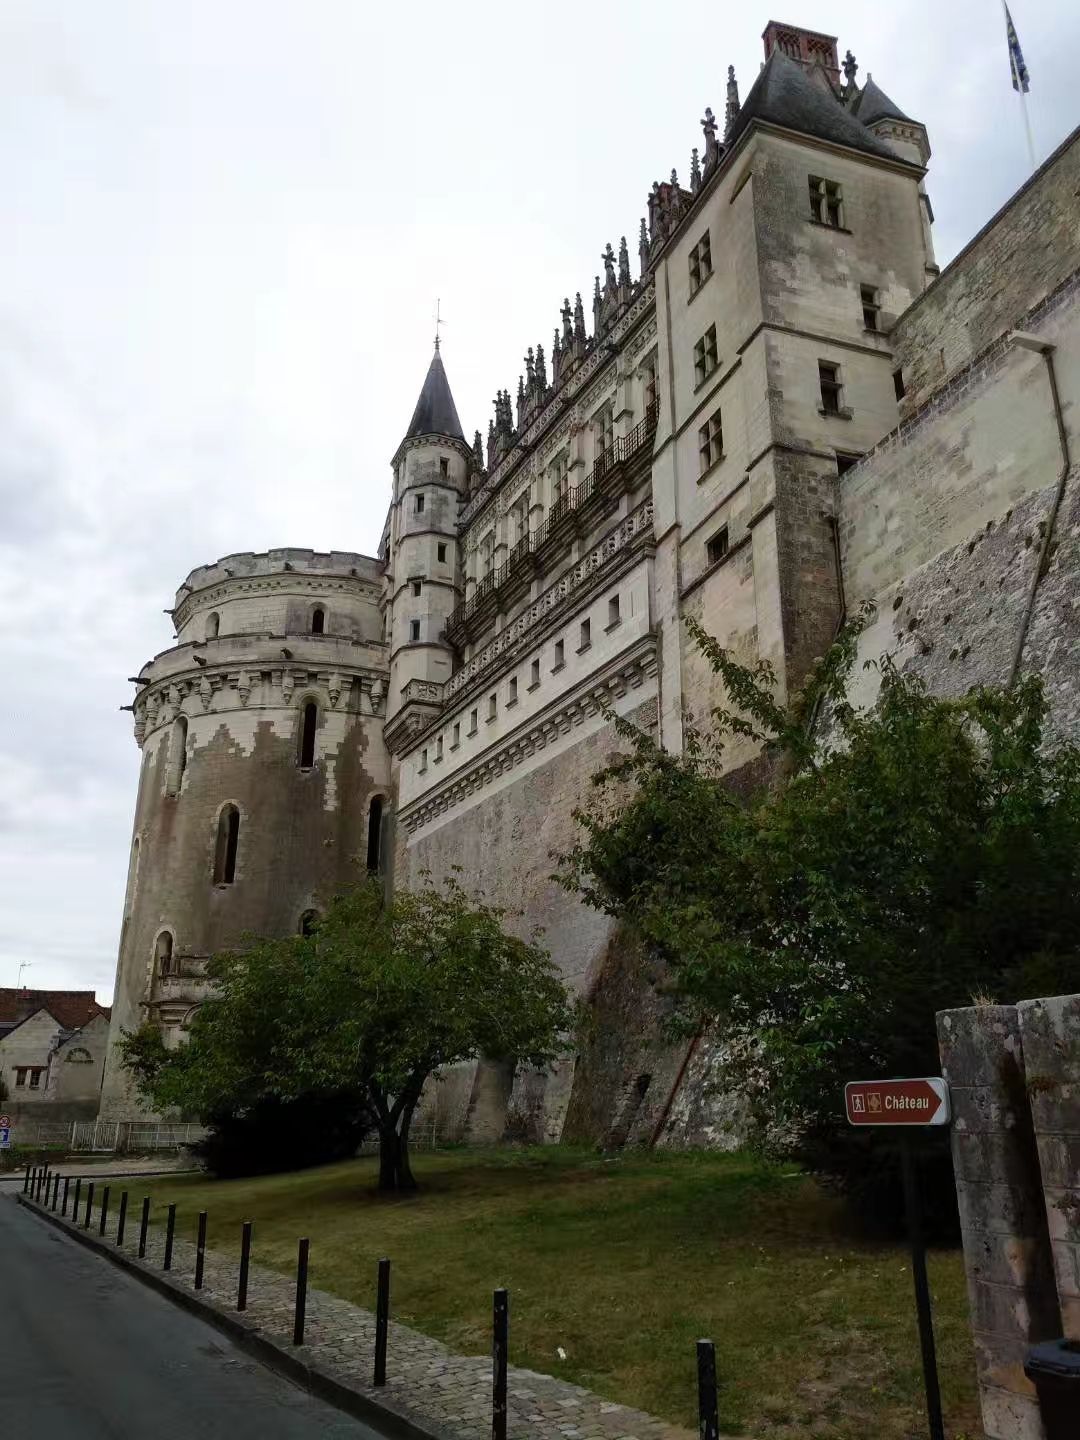 昂布瓦兹皇家城堡，卢瓦尔河畔，五百多年历史。达芬奇在此工作不少时间，高薪聘为御前第一画家、建筑师、工